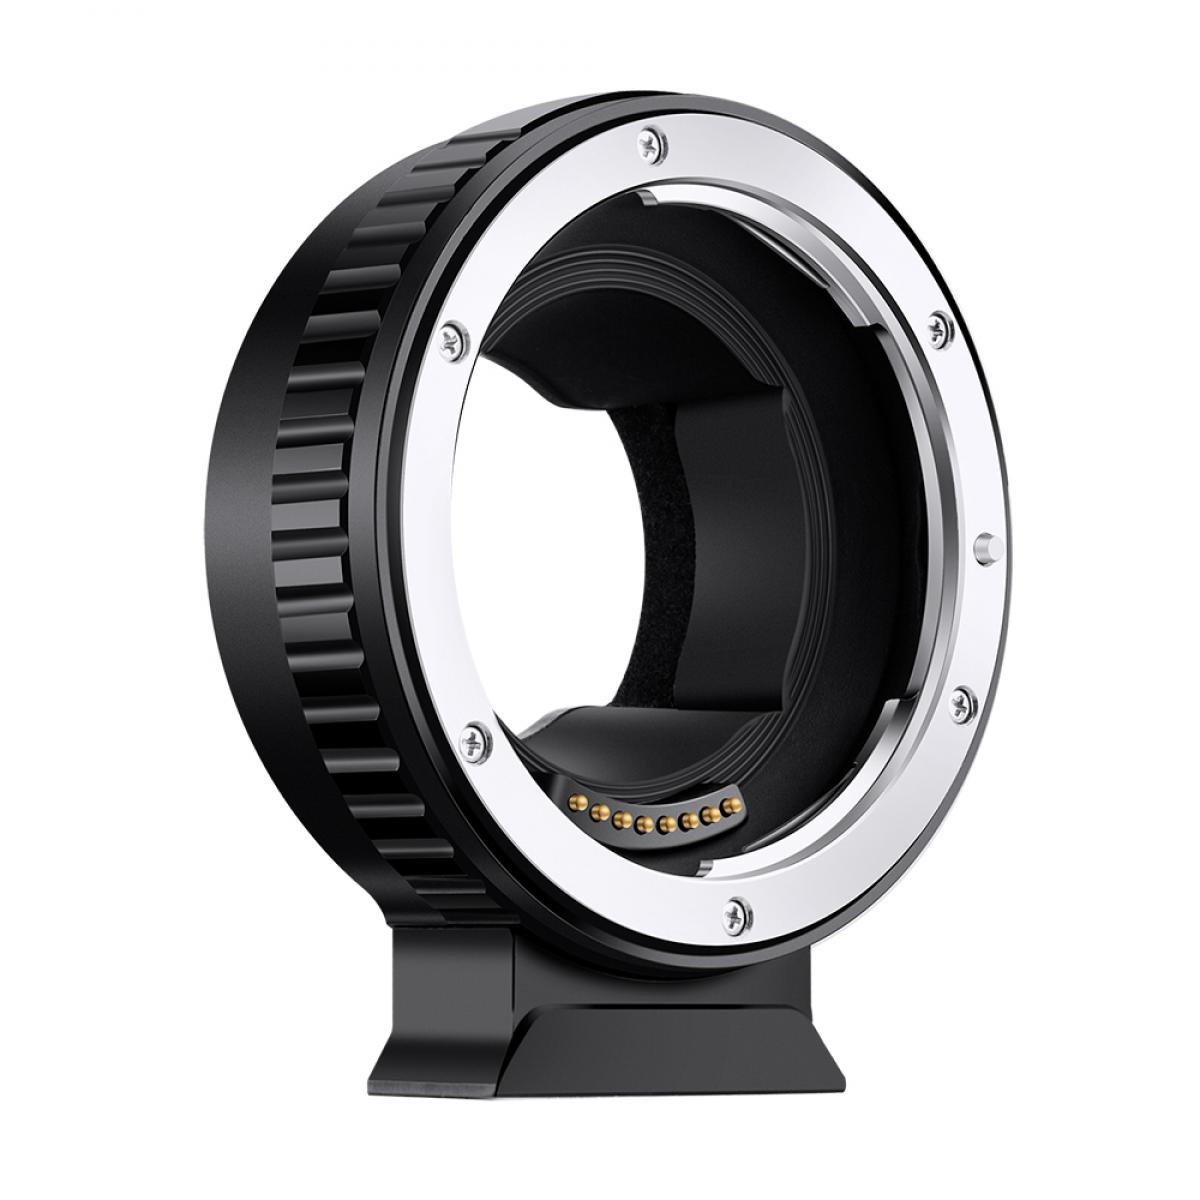 K & amp; f concepto de lente de enfoque automático para adaptador EF EF-NEX Adaptador electrónico Ringe Ef Ef-S Muunt lente a Sona Eny Mumeras